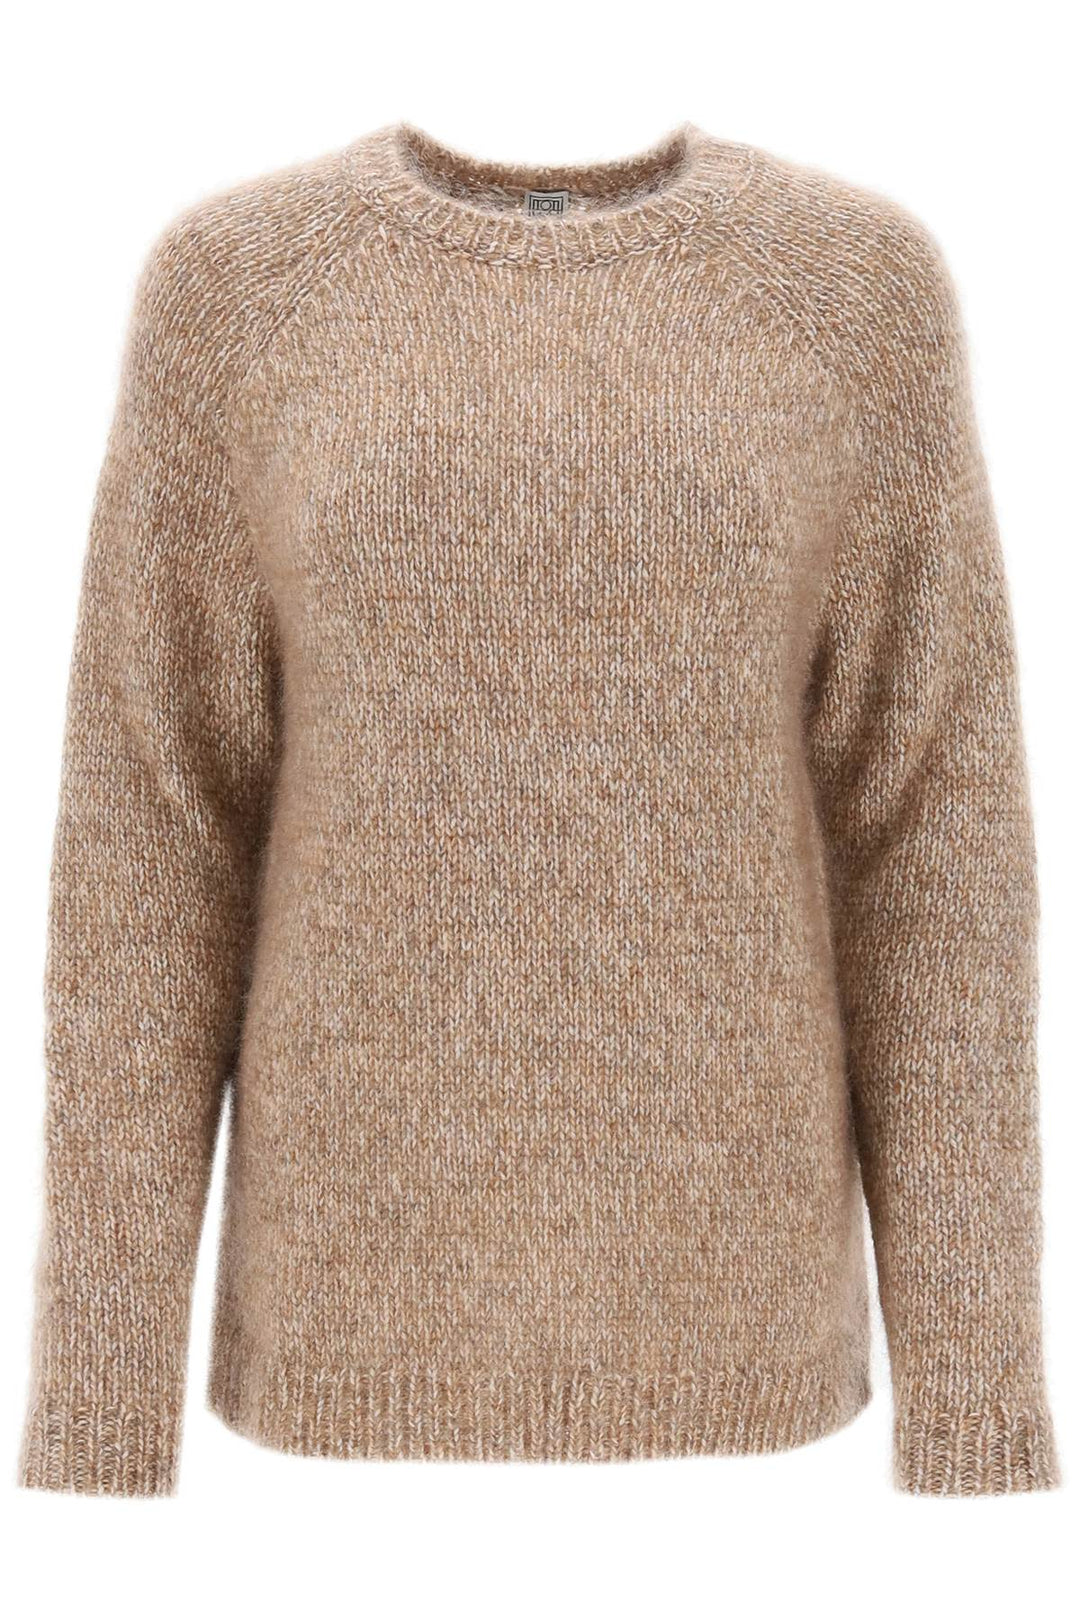 Toteme Melange Effect Sweater   Beige